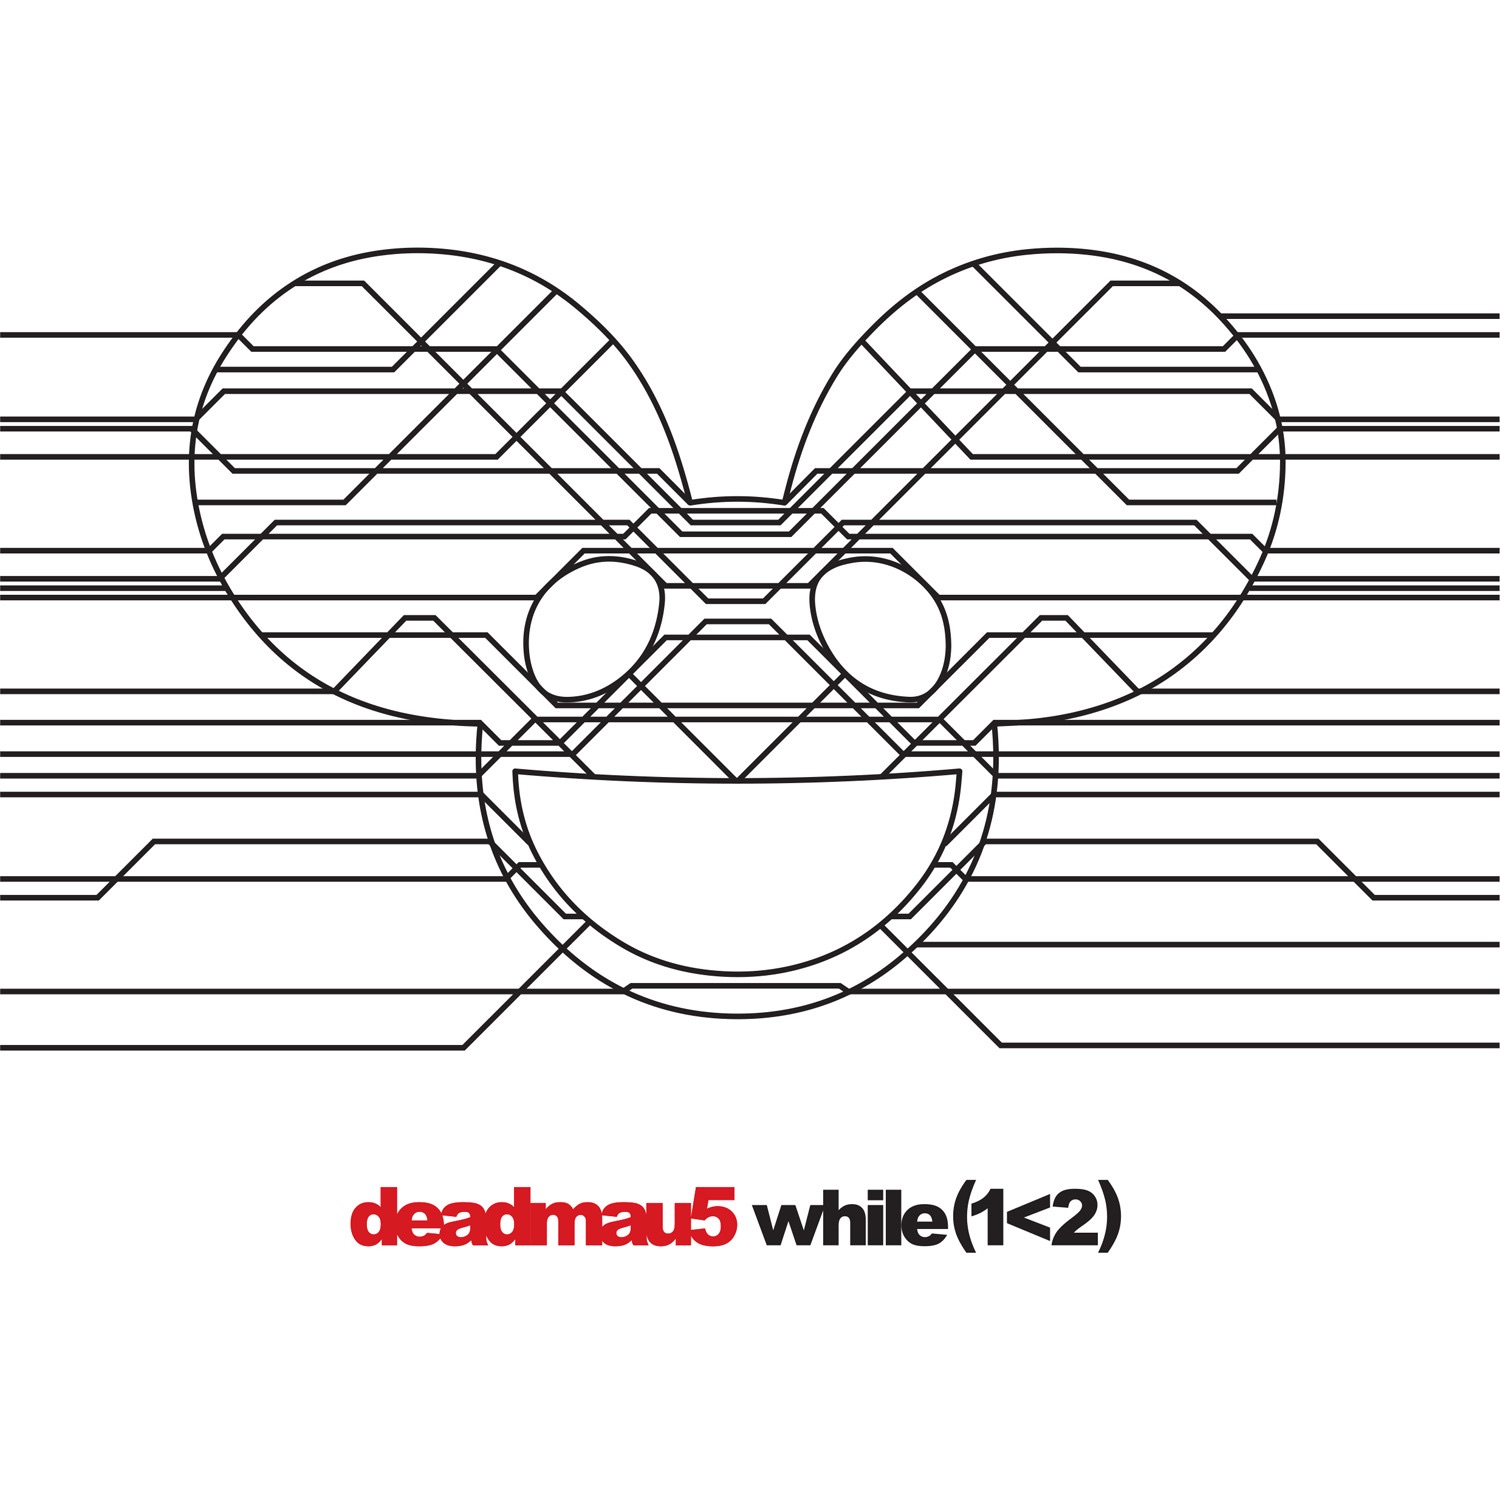 deadmau5 — while(1&gt;2) cover artwork